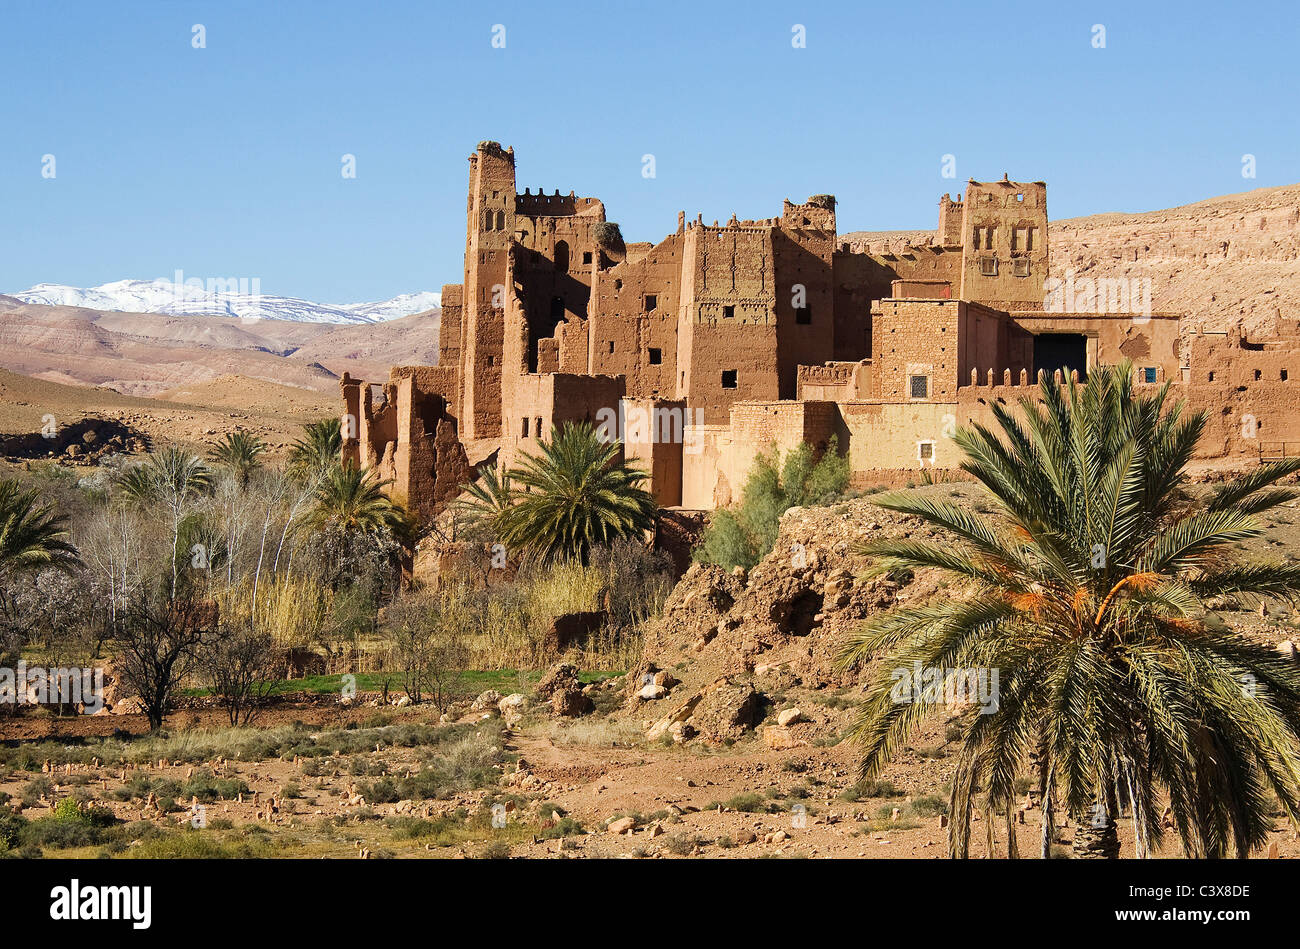 La bellissima Tamdaght kasbah (fortezza). Alto Atlante, Marocco Foto Stock